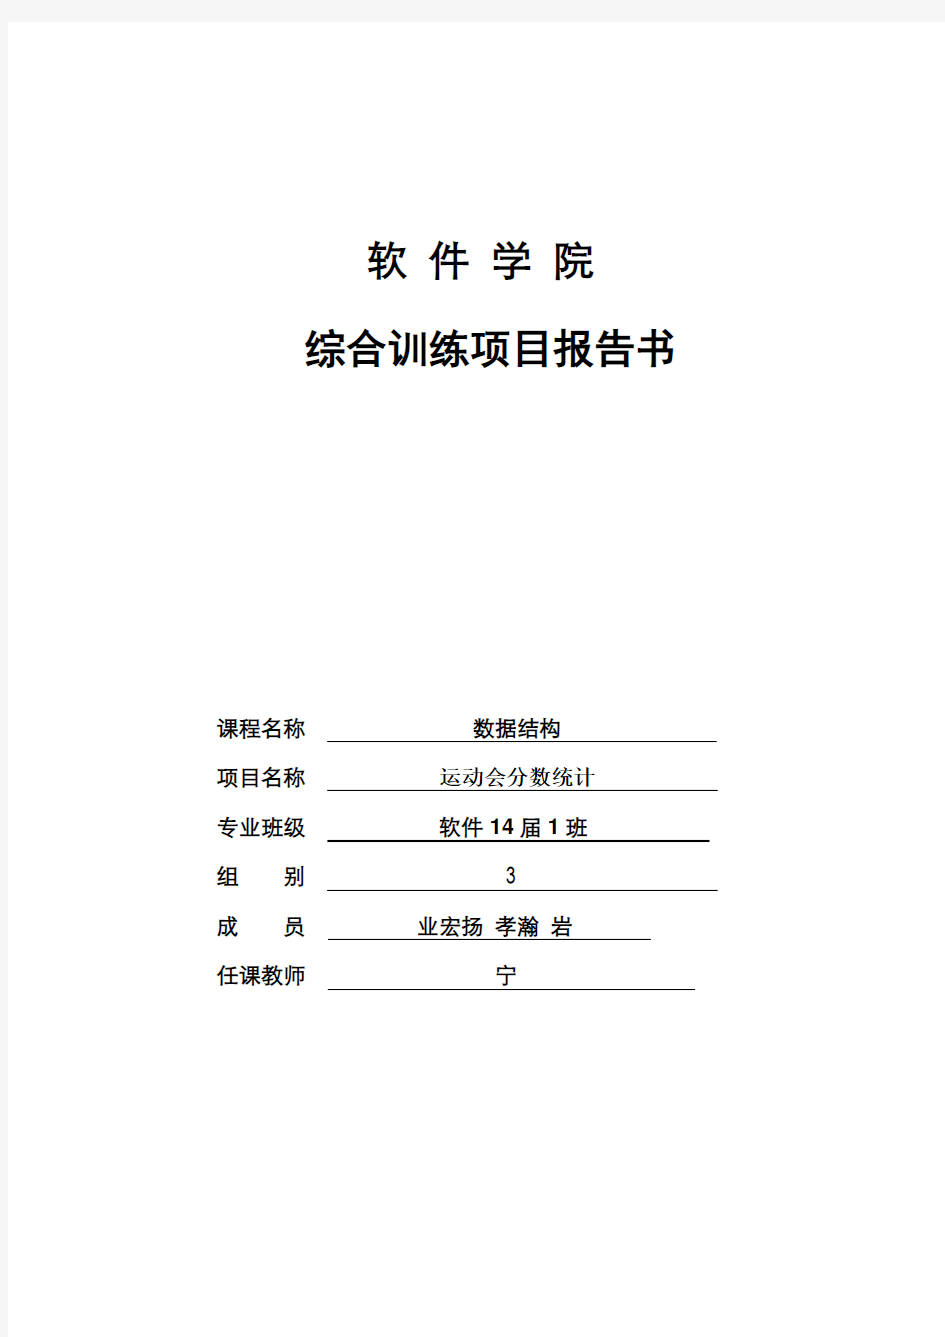 辽宁工程技术大学综合训练项目任务书一(数据结构)